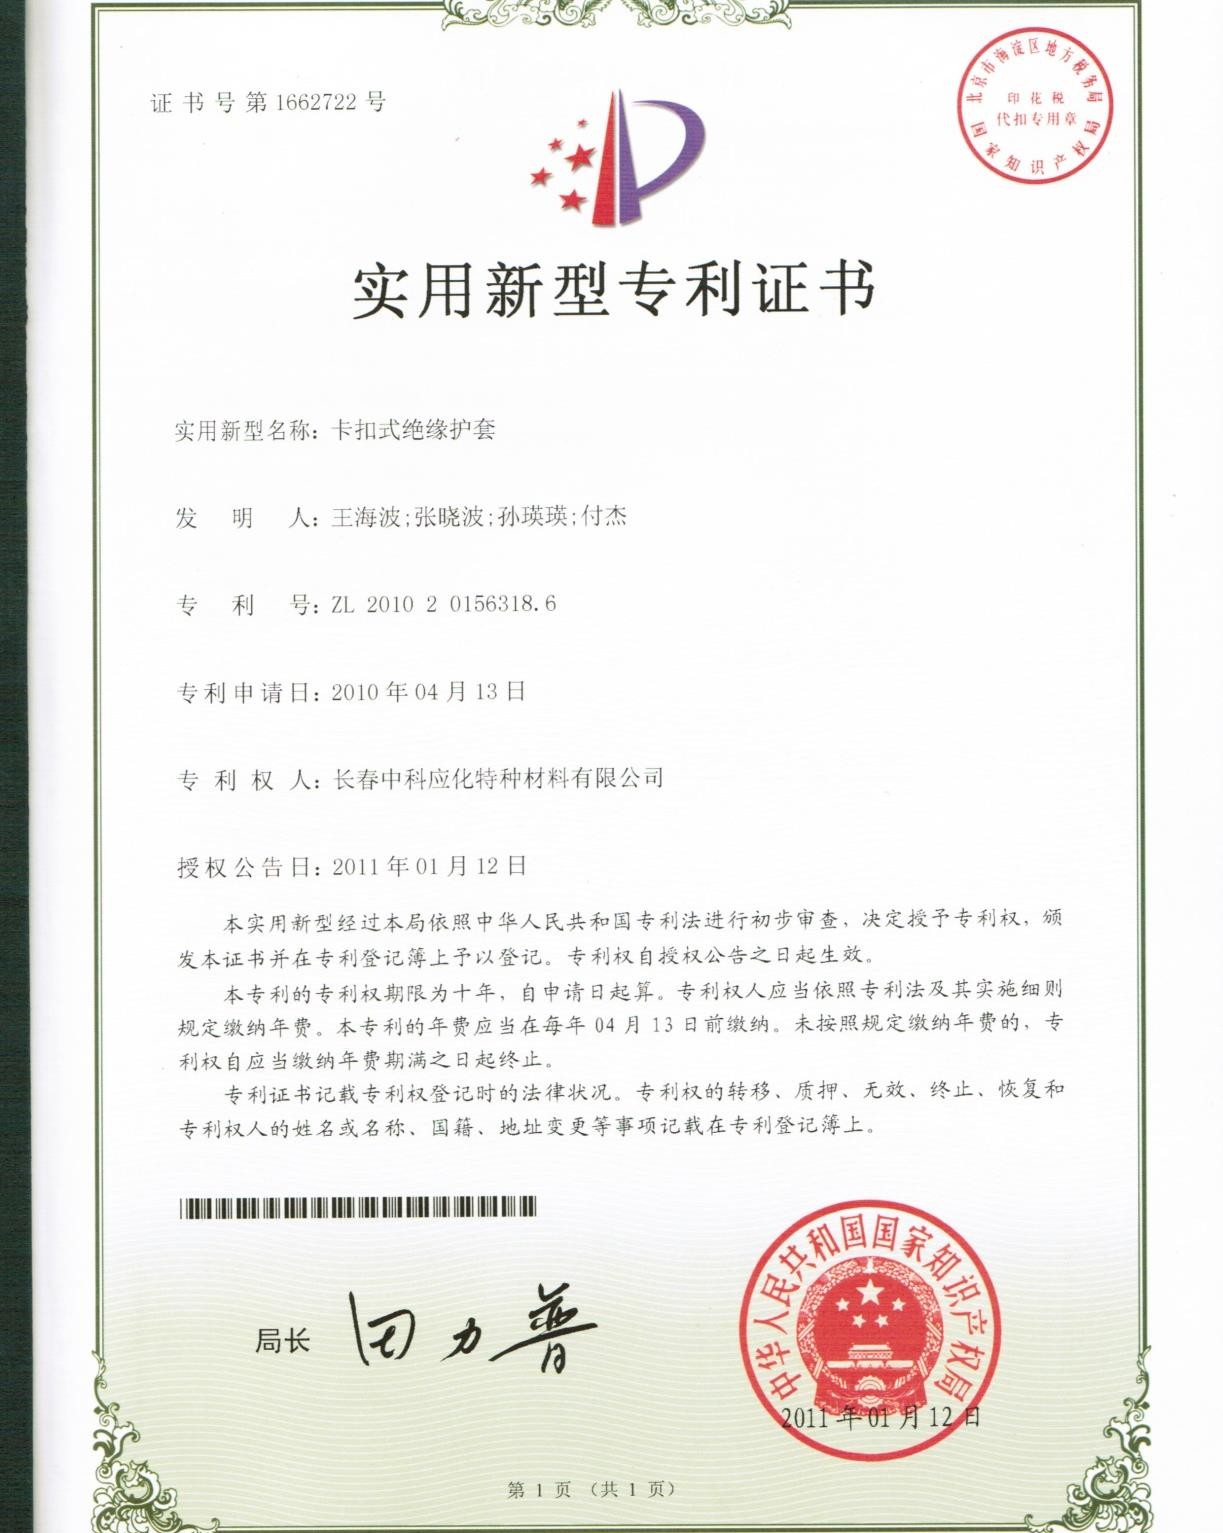 National Patent Certificate for SINOFUJI